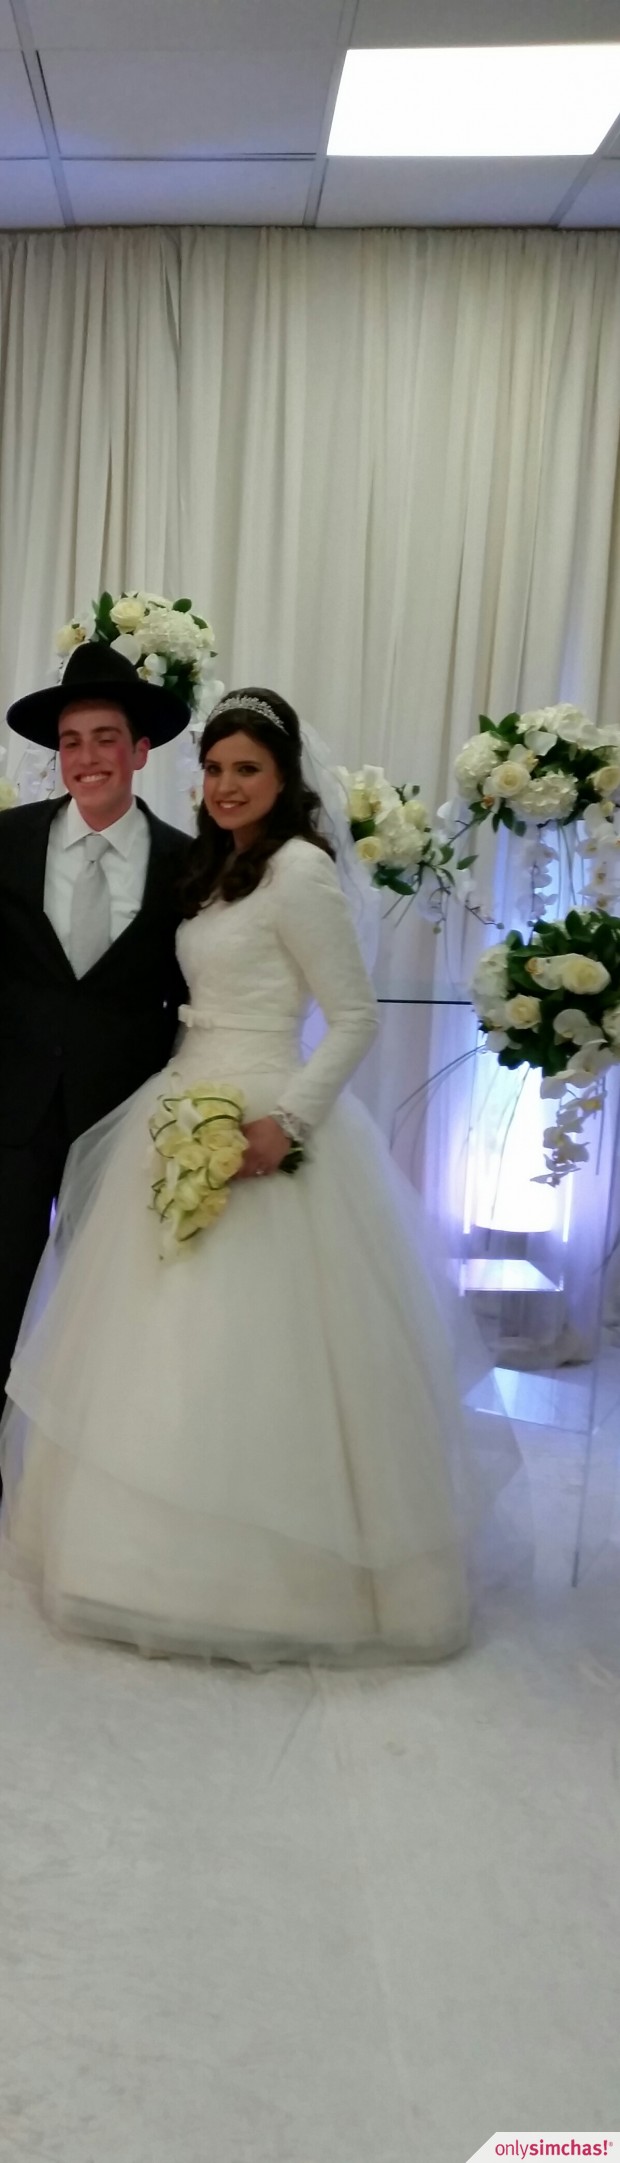 Wedding  of  Chilli  Adler  & Soro Baila  Gutterman